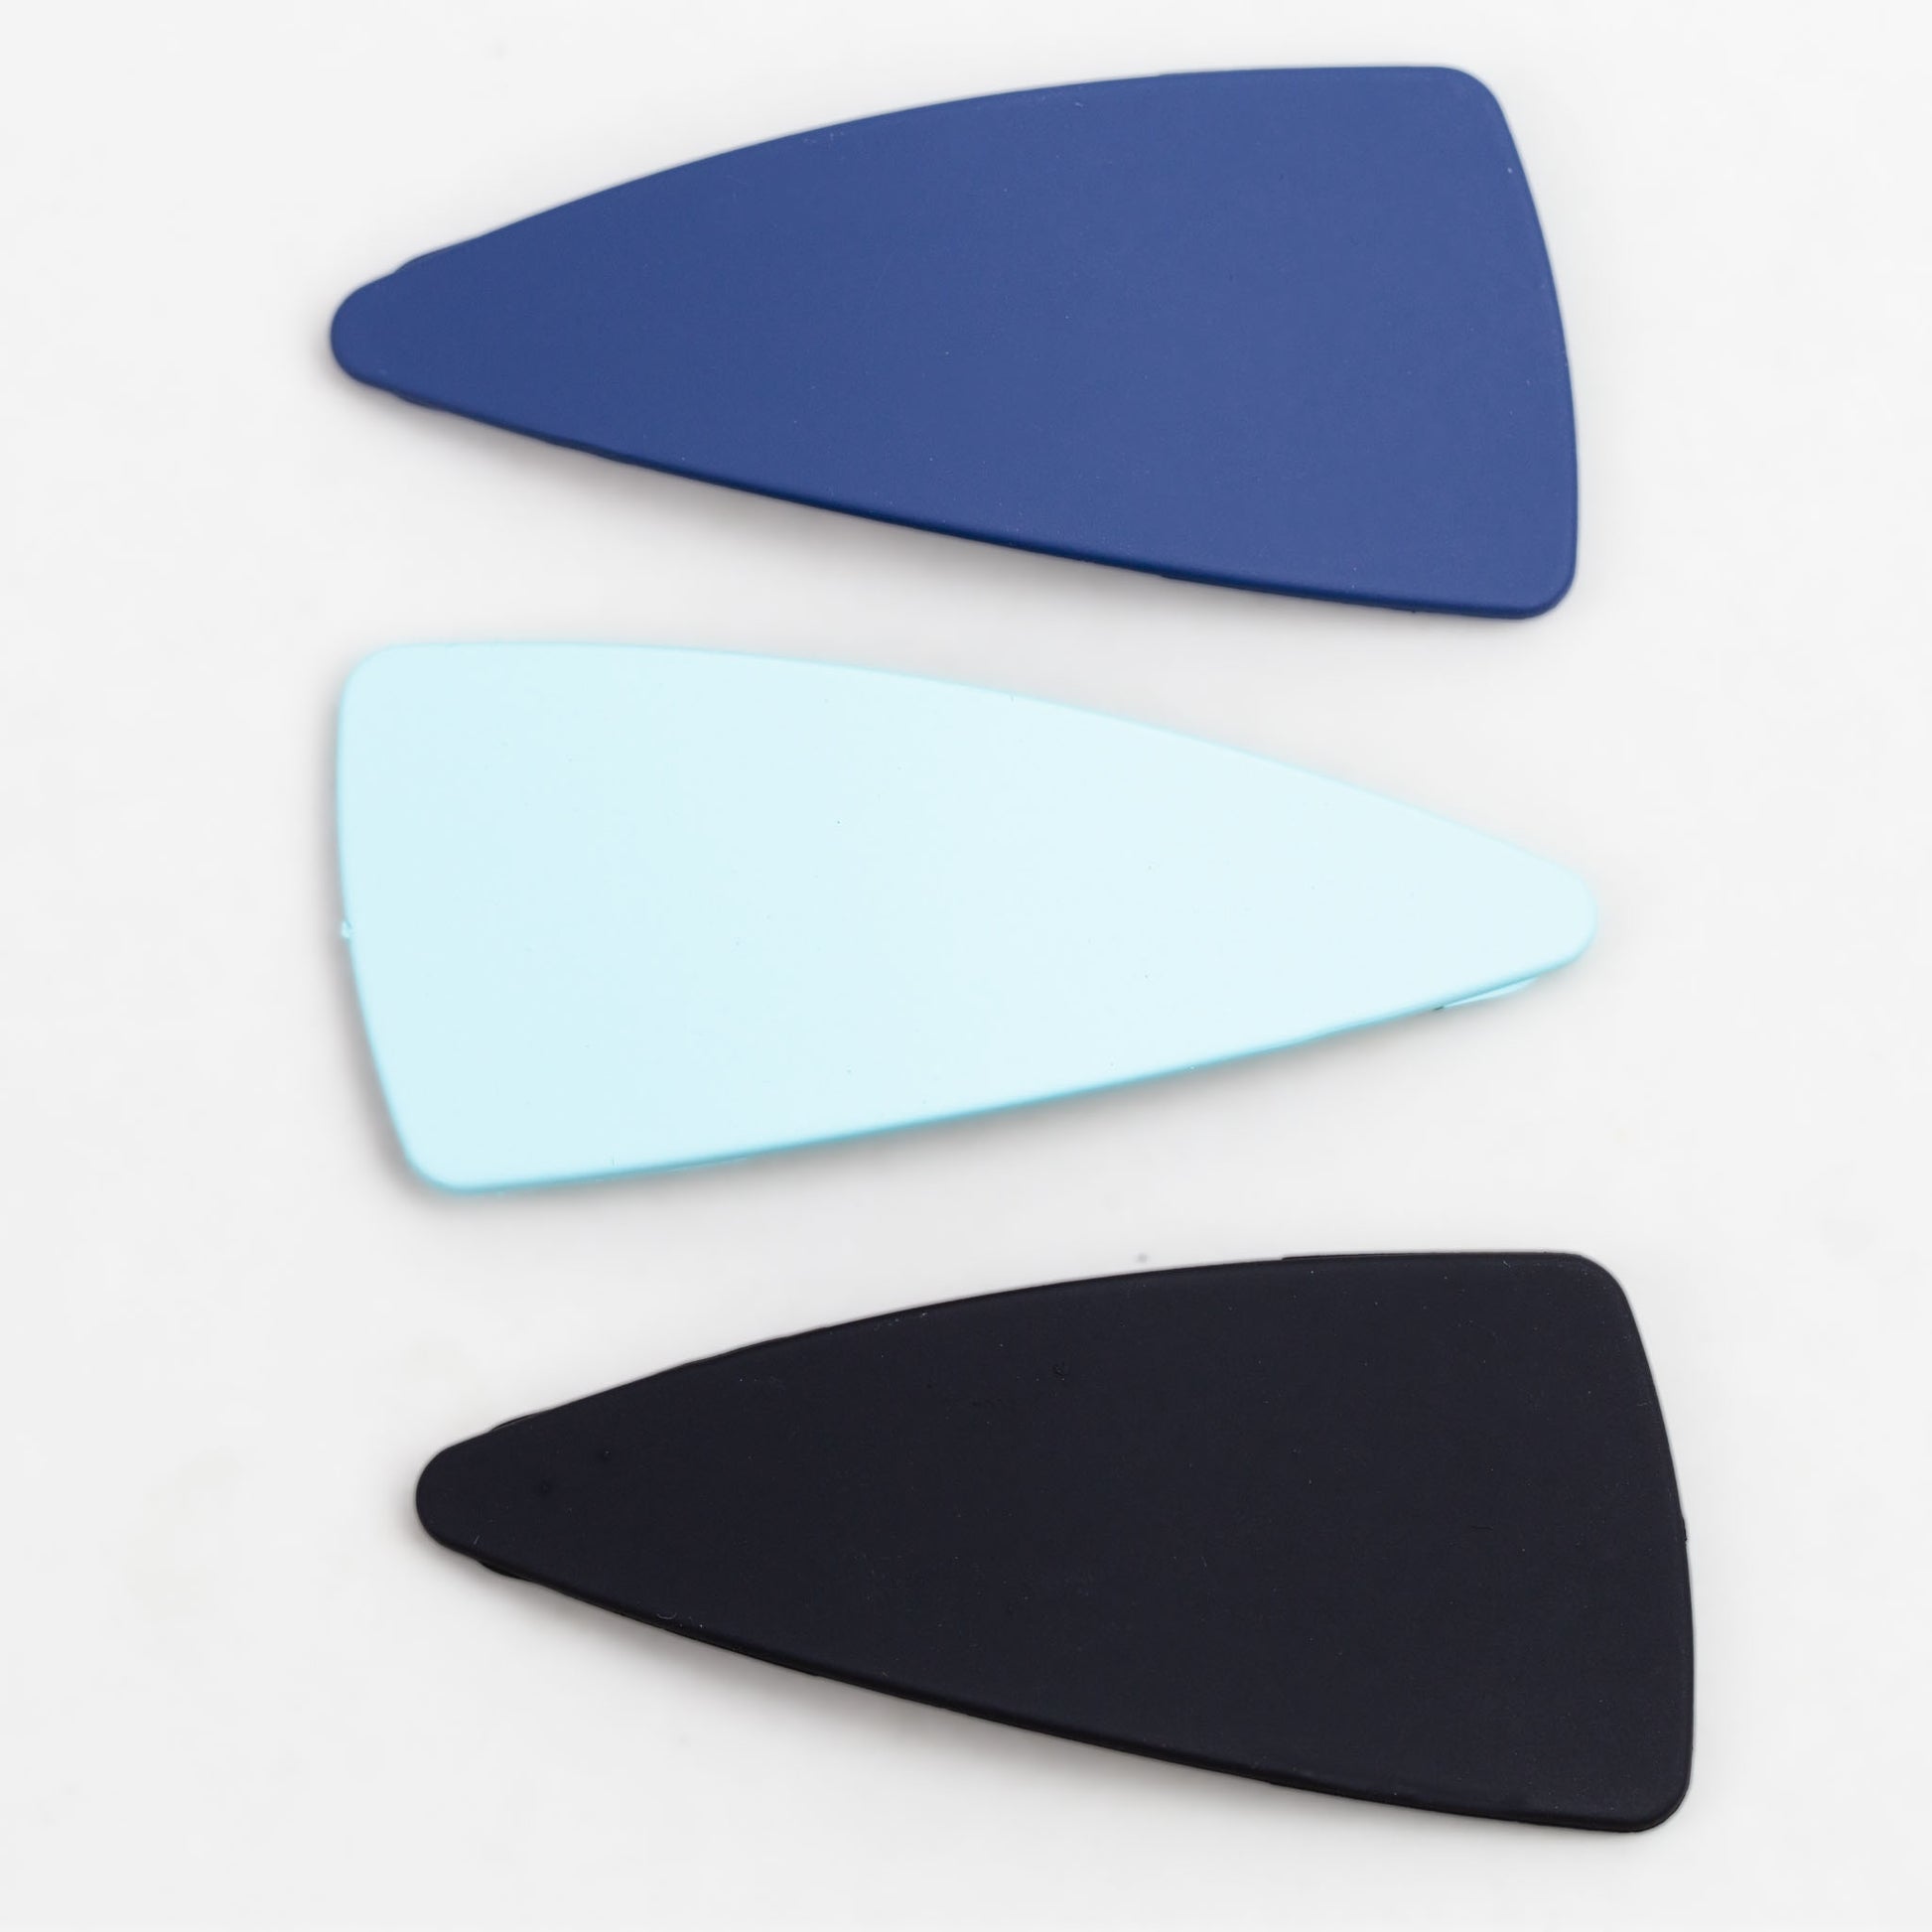 Agrafe de păr click în formă triunghiulară cu textură fină de silicon, set 3 buc - Albastru, Negru